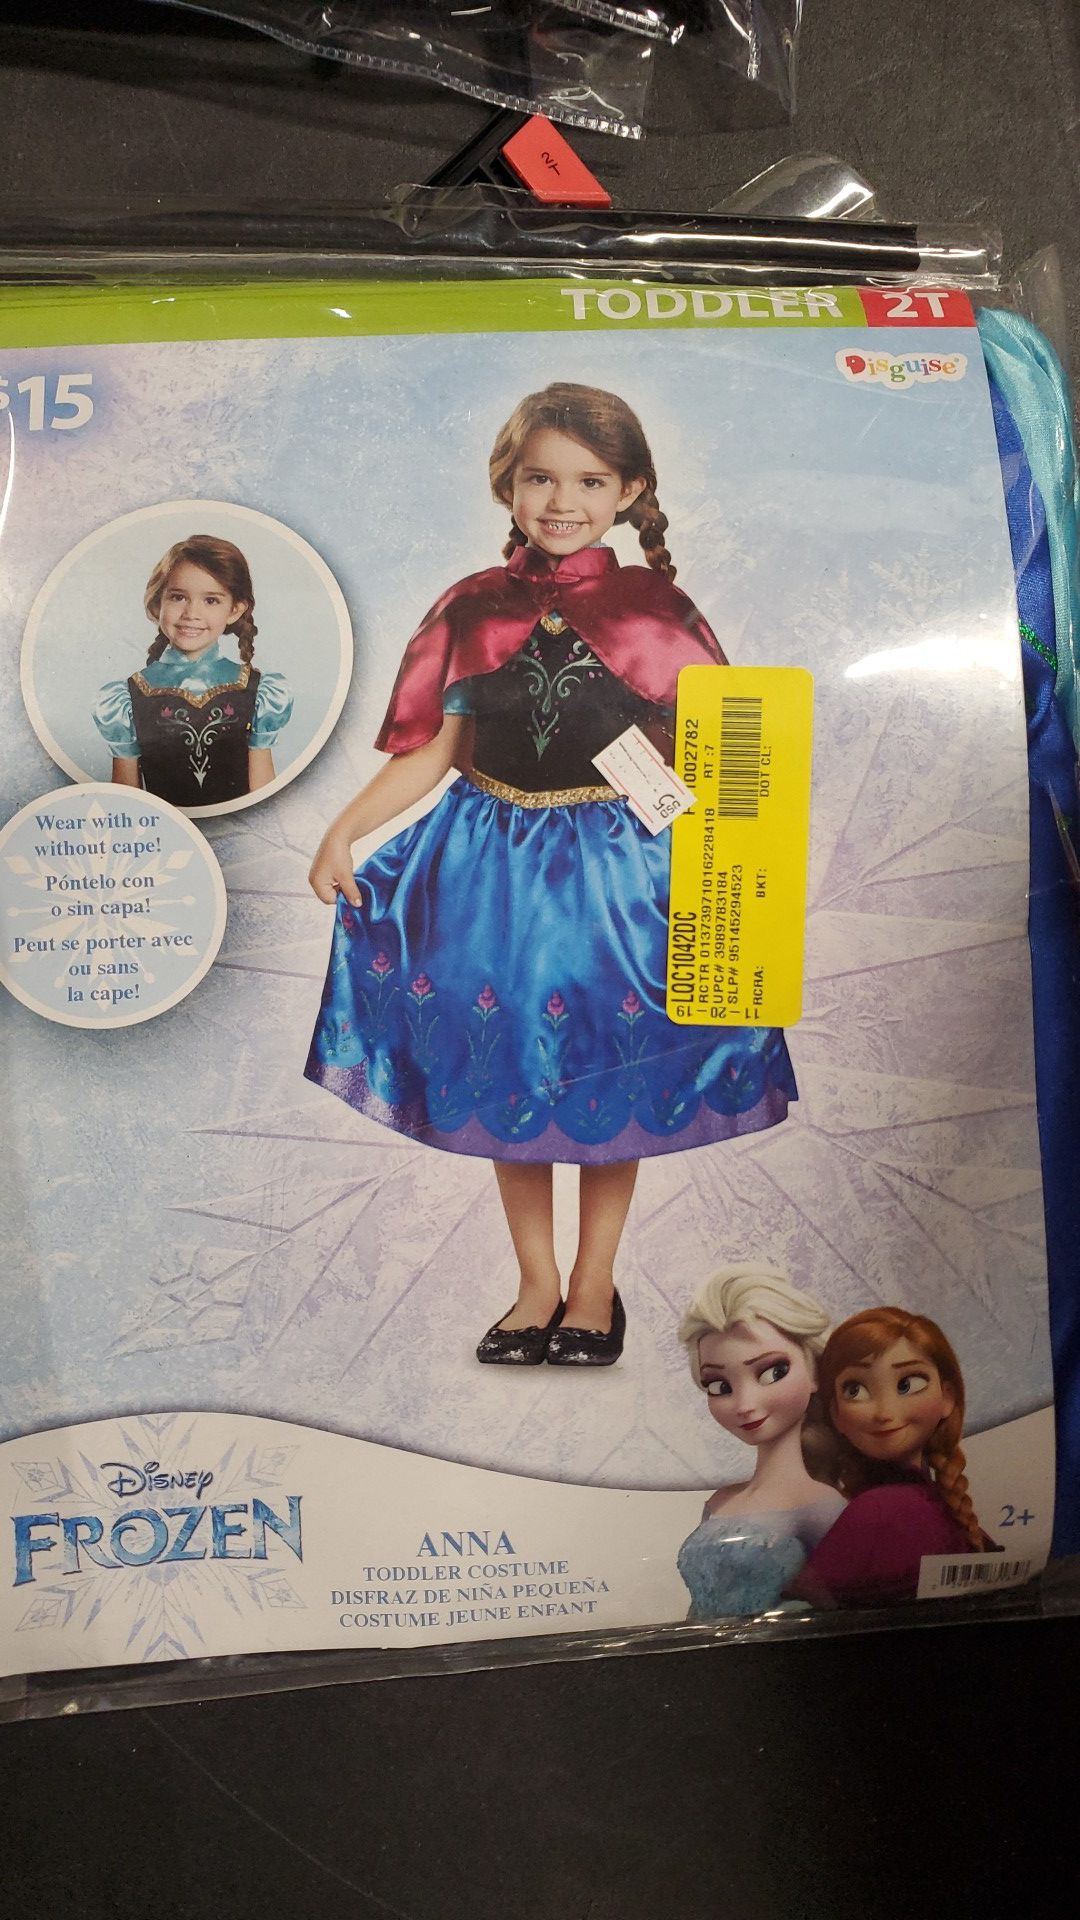 Disney Frozen Anna toddler costume 2T